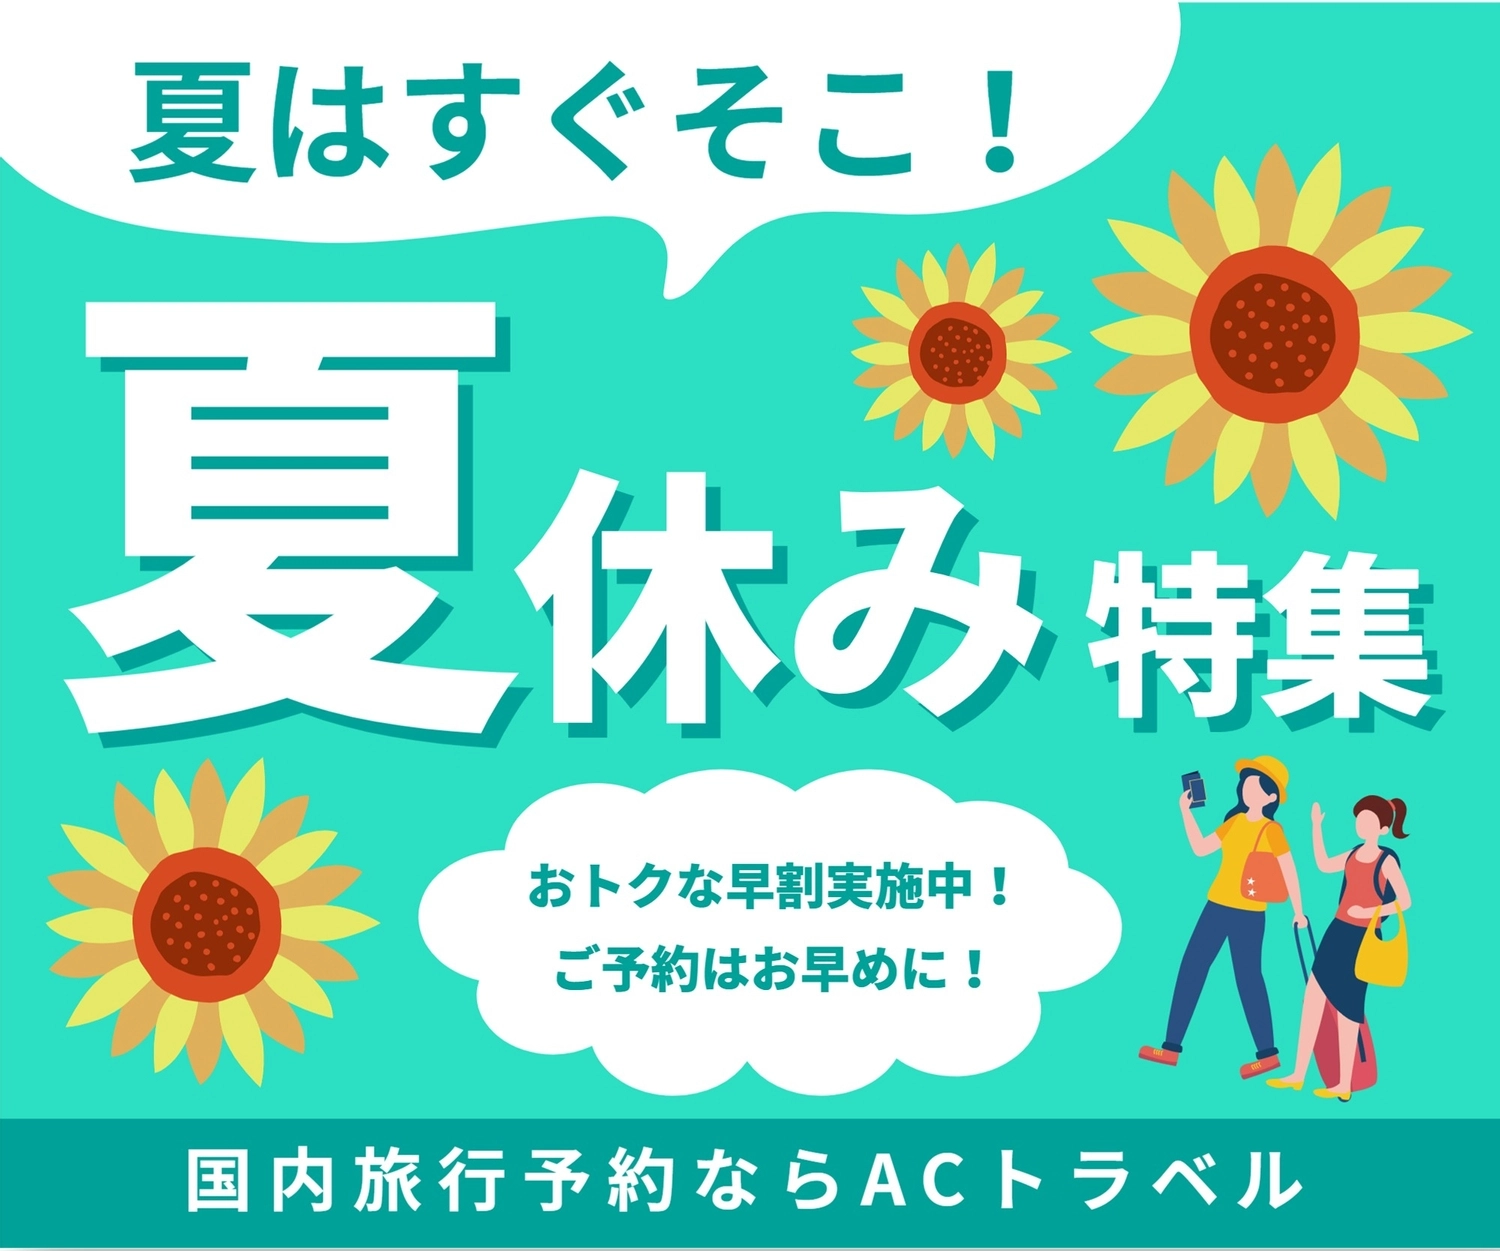 旅行の夏休み特集のバナー, banner, advertisement, Square, Banner template